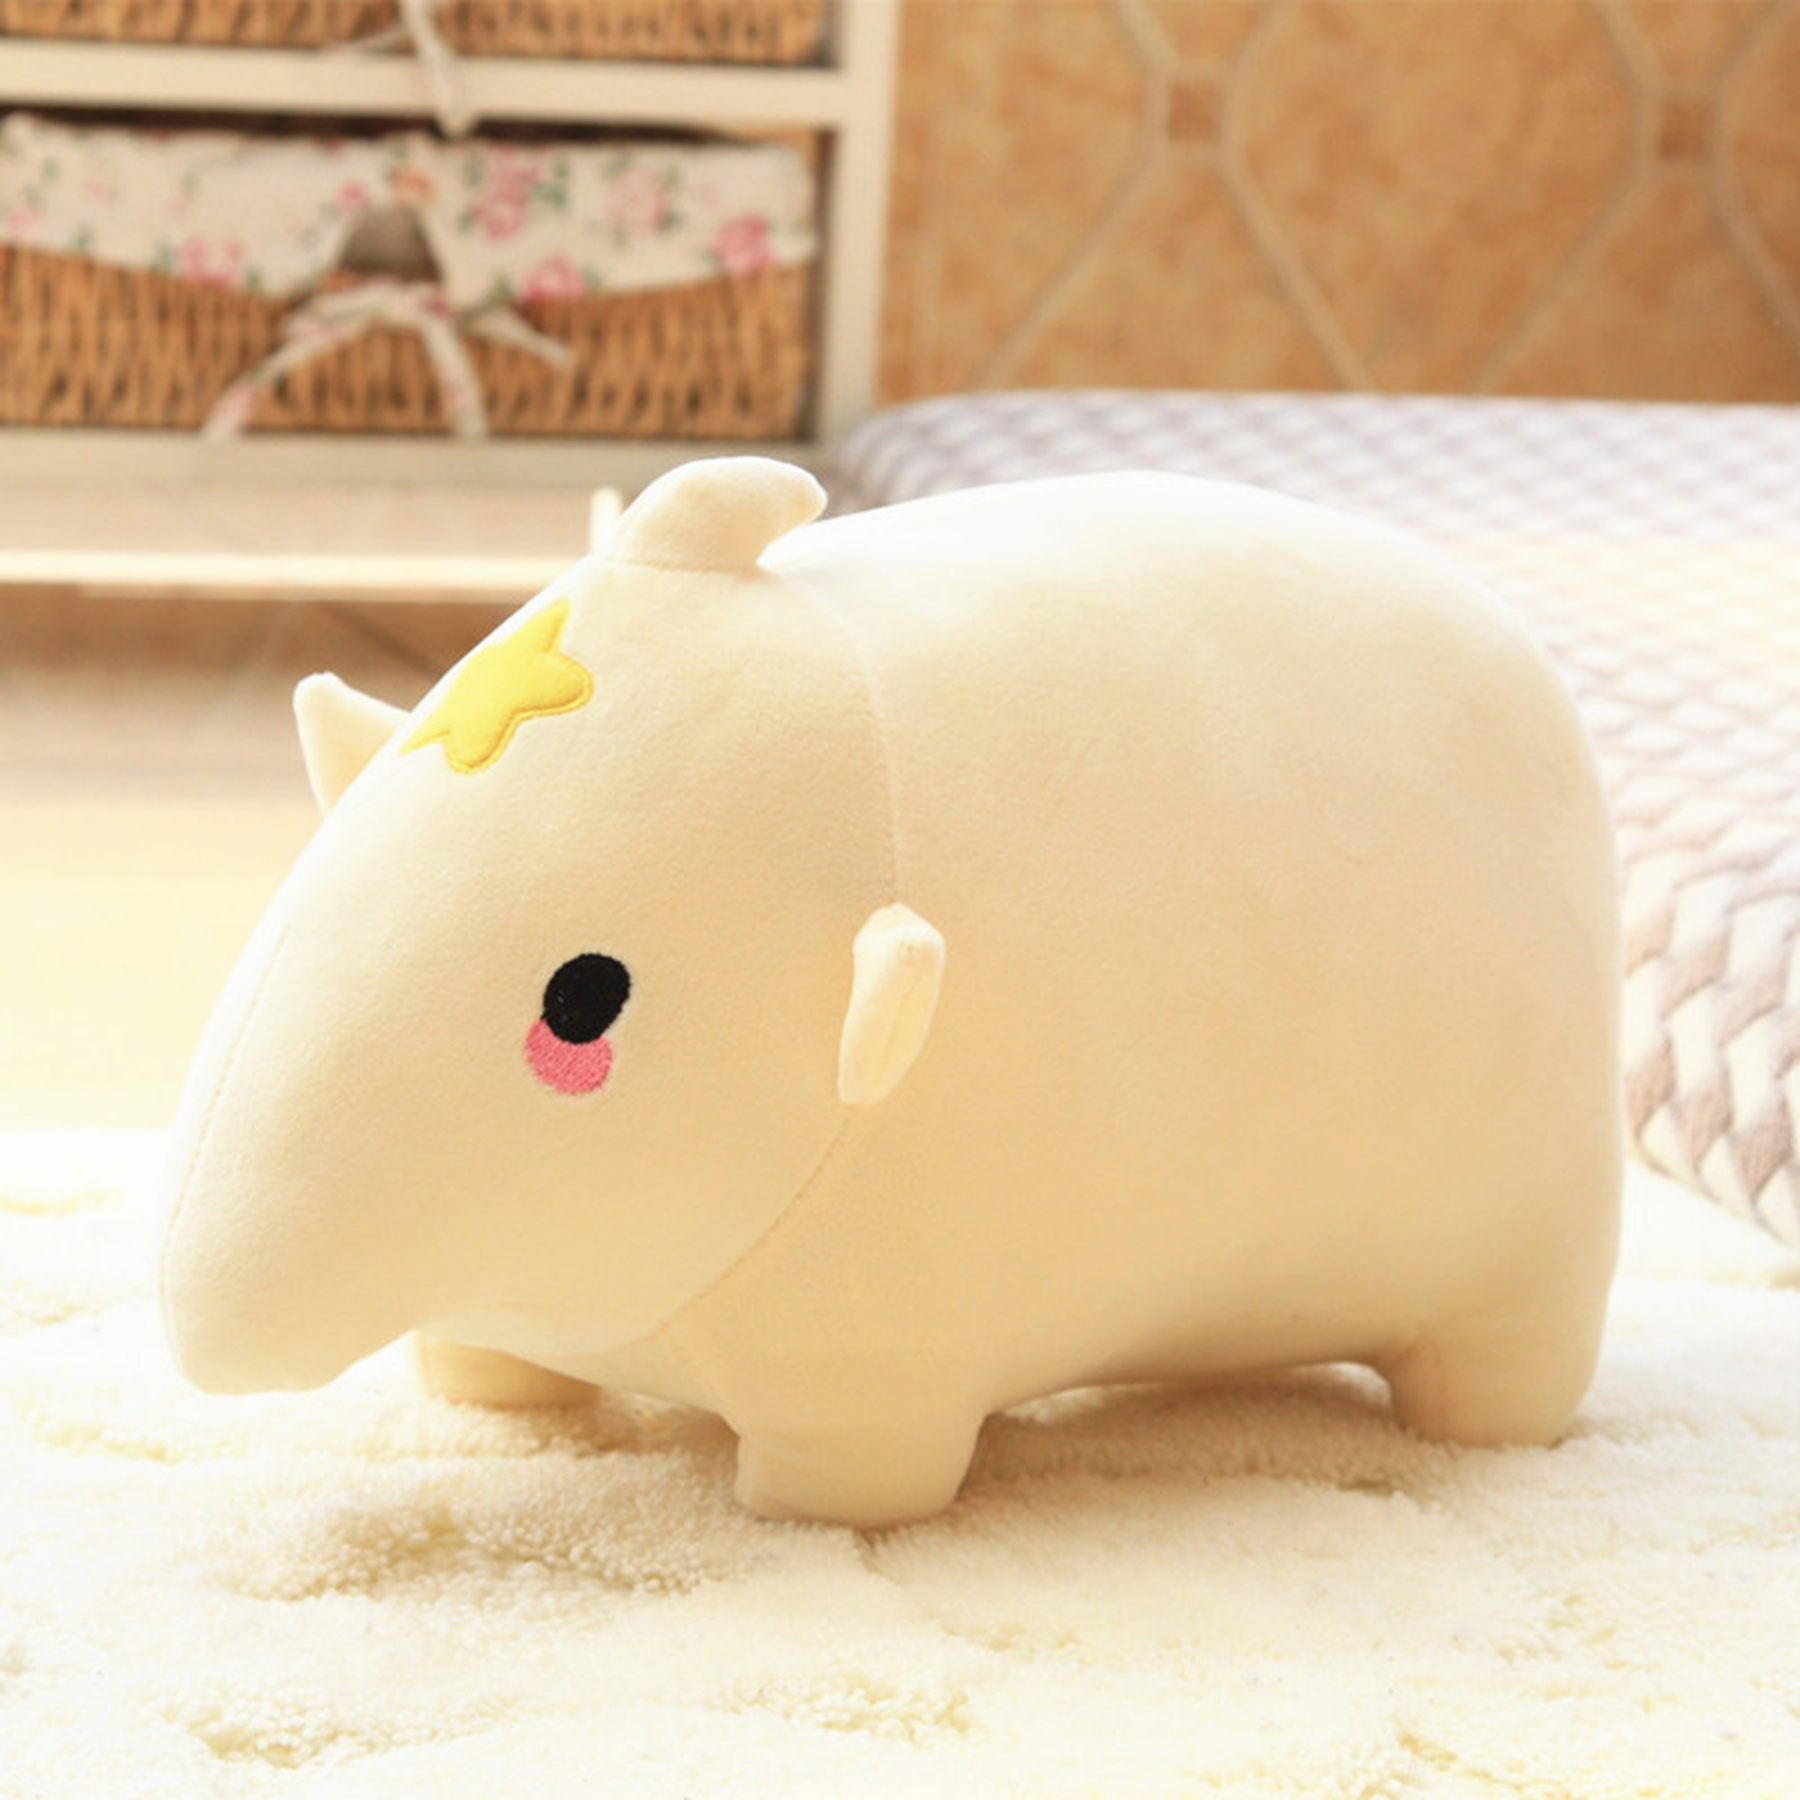 Animal Plushies Adorable Tapir Plush Toy - Perfect Cuddly Stuffed Animal for Kids